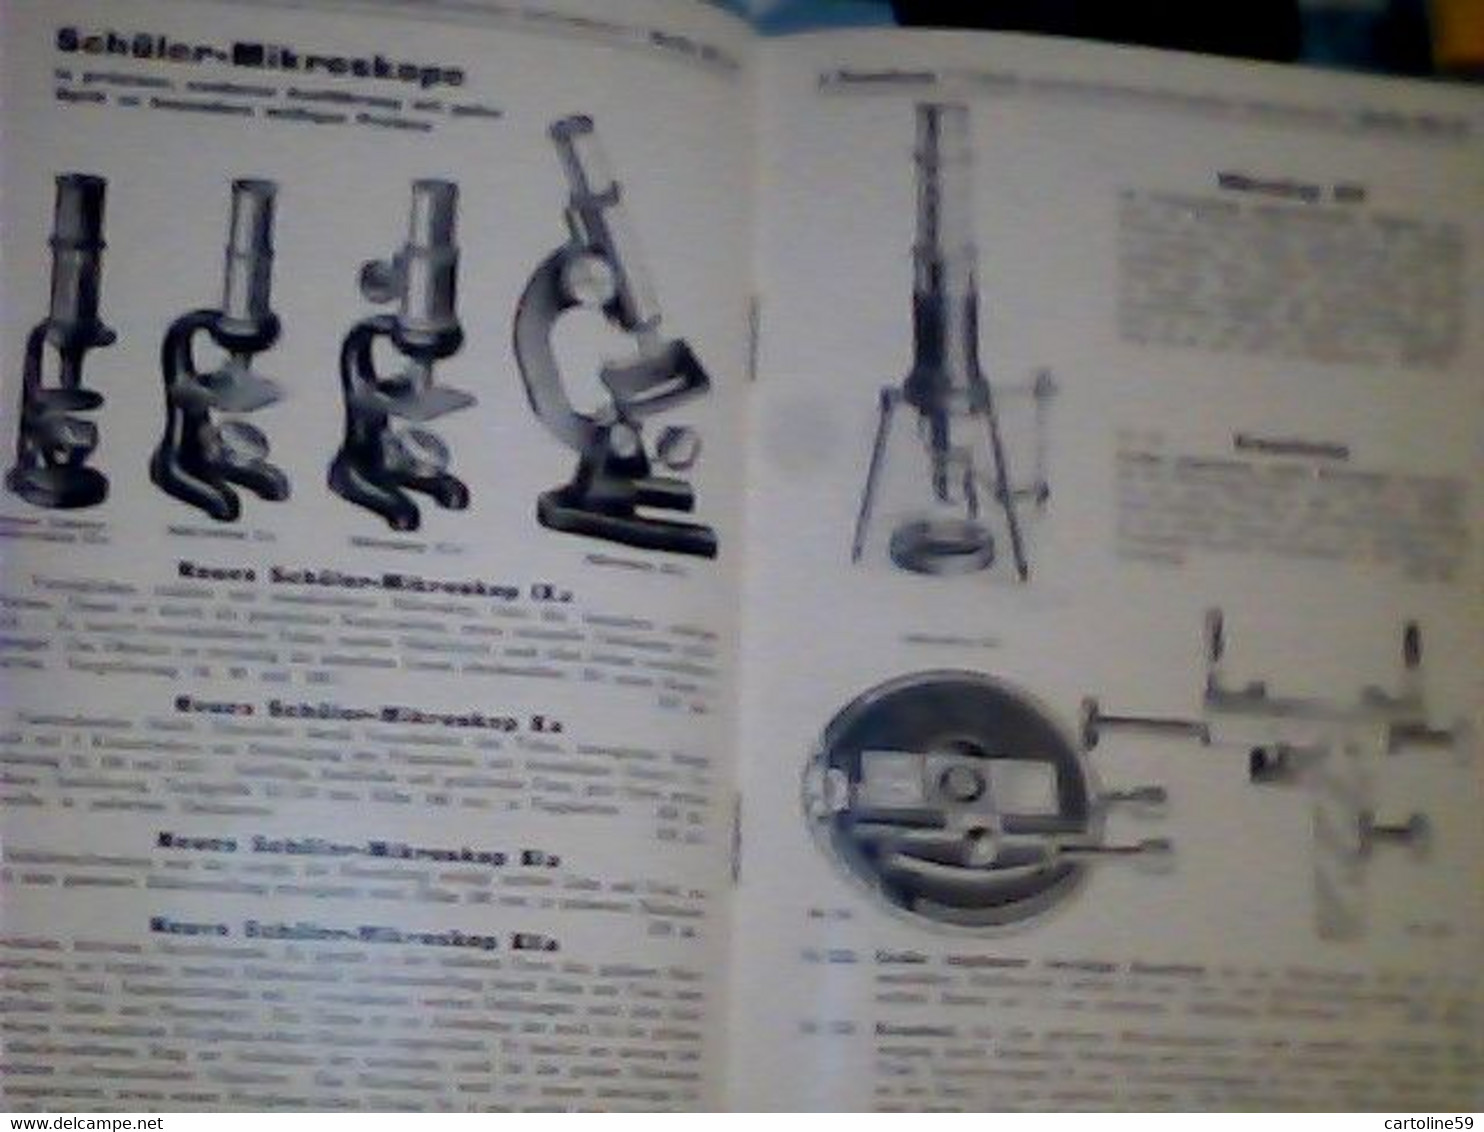 LIBRETTO MICROSCOPIO ROSENBAUM BERLIN FABRIK OPTISCH MIKROSKOP PREISLISTELETTER 1932 IQ8312 - Catalogues